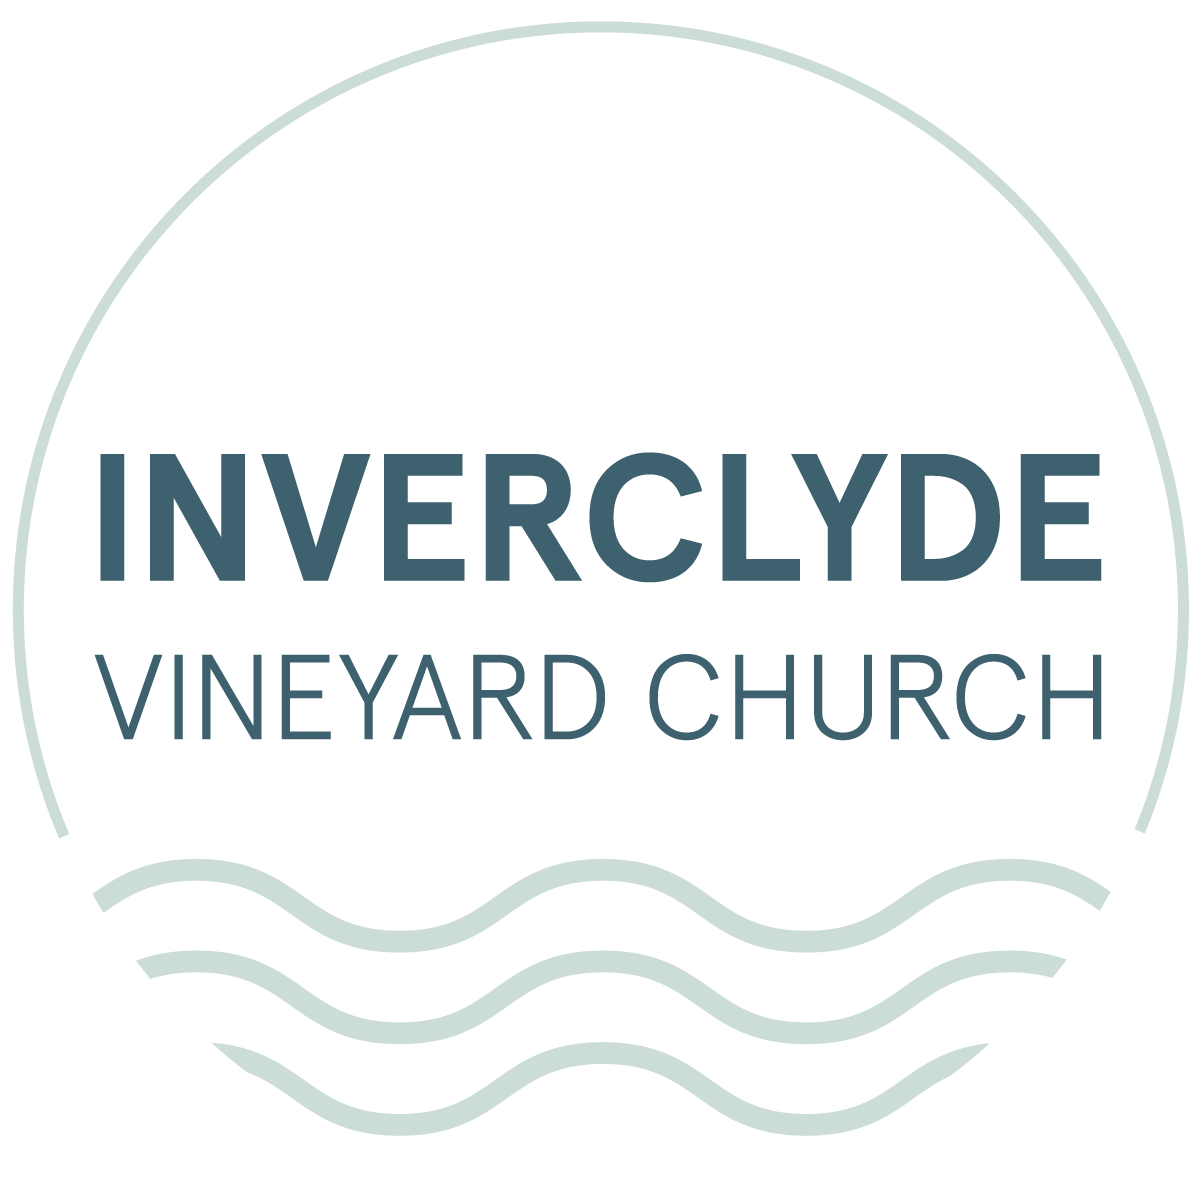 Inverclyde Vineyard Church